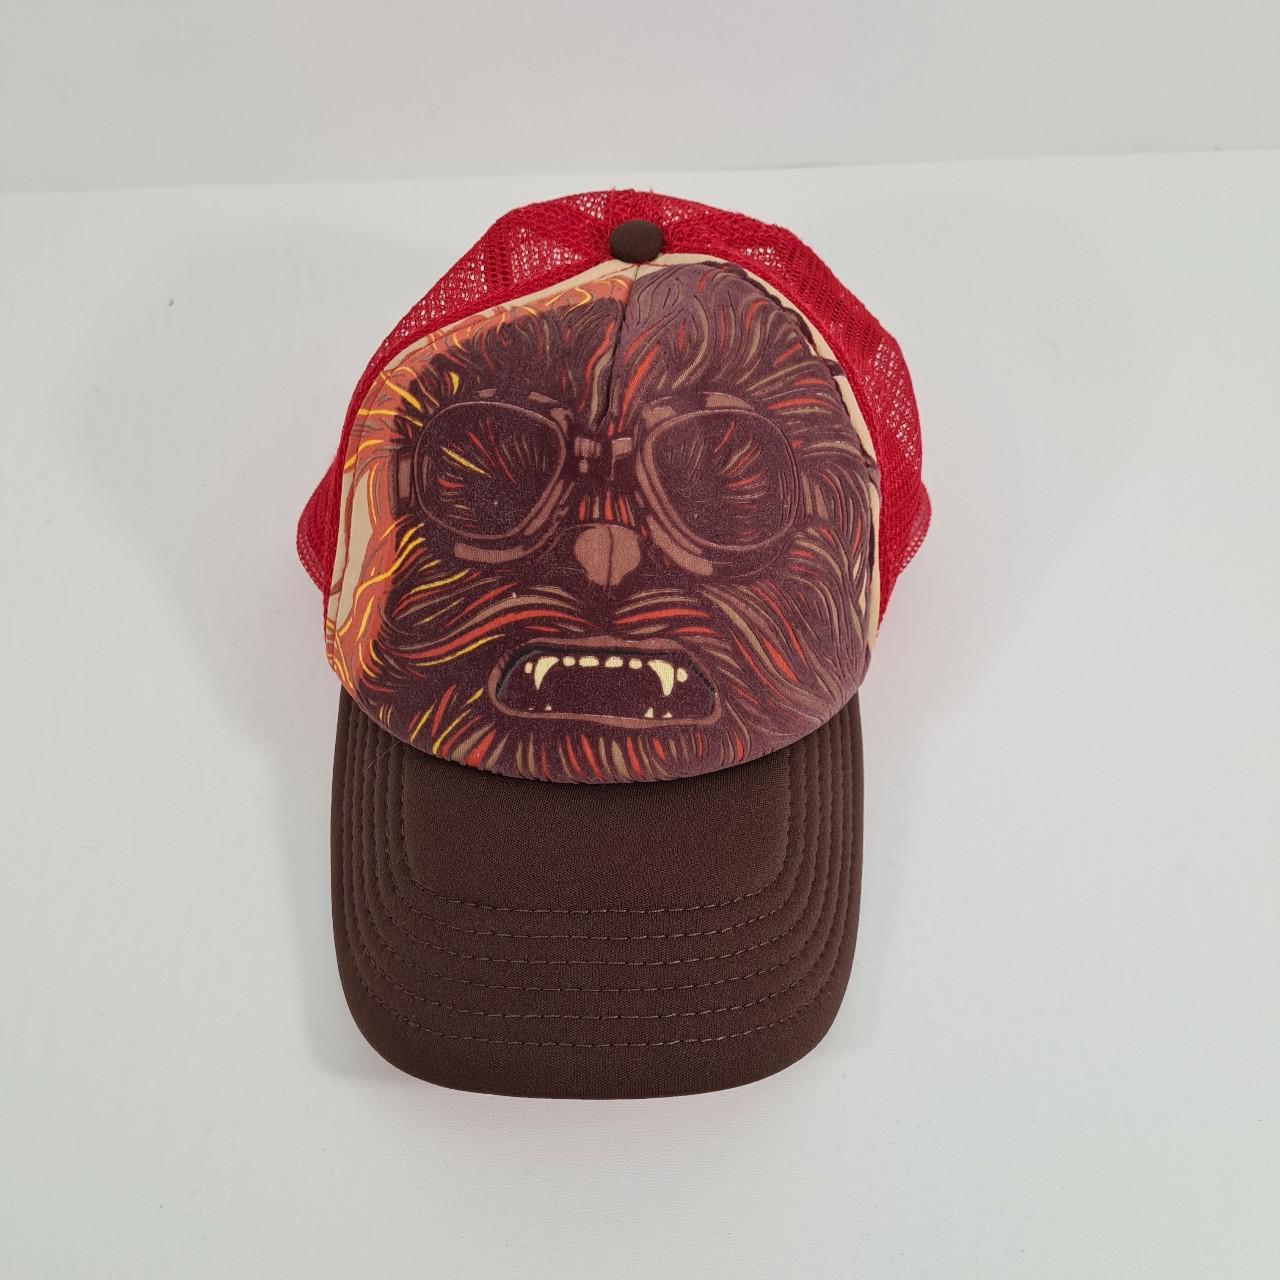 Product Image 1 - Star Wars Chewbacca Mesh Truker